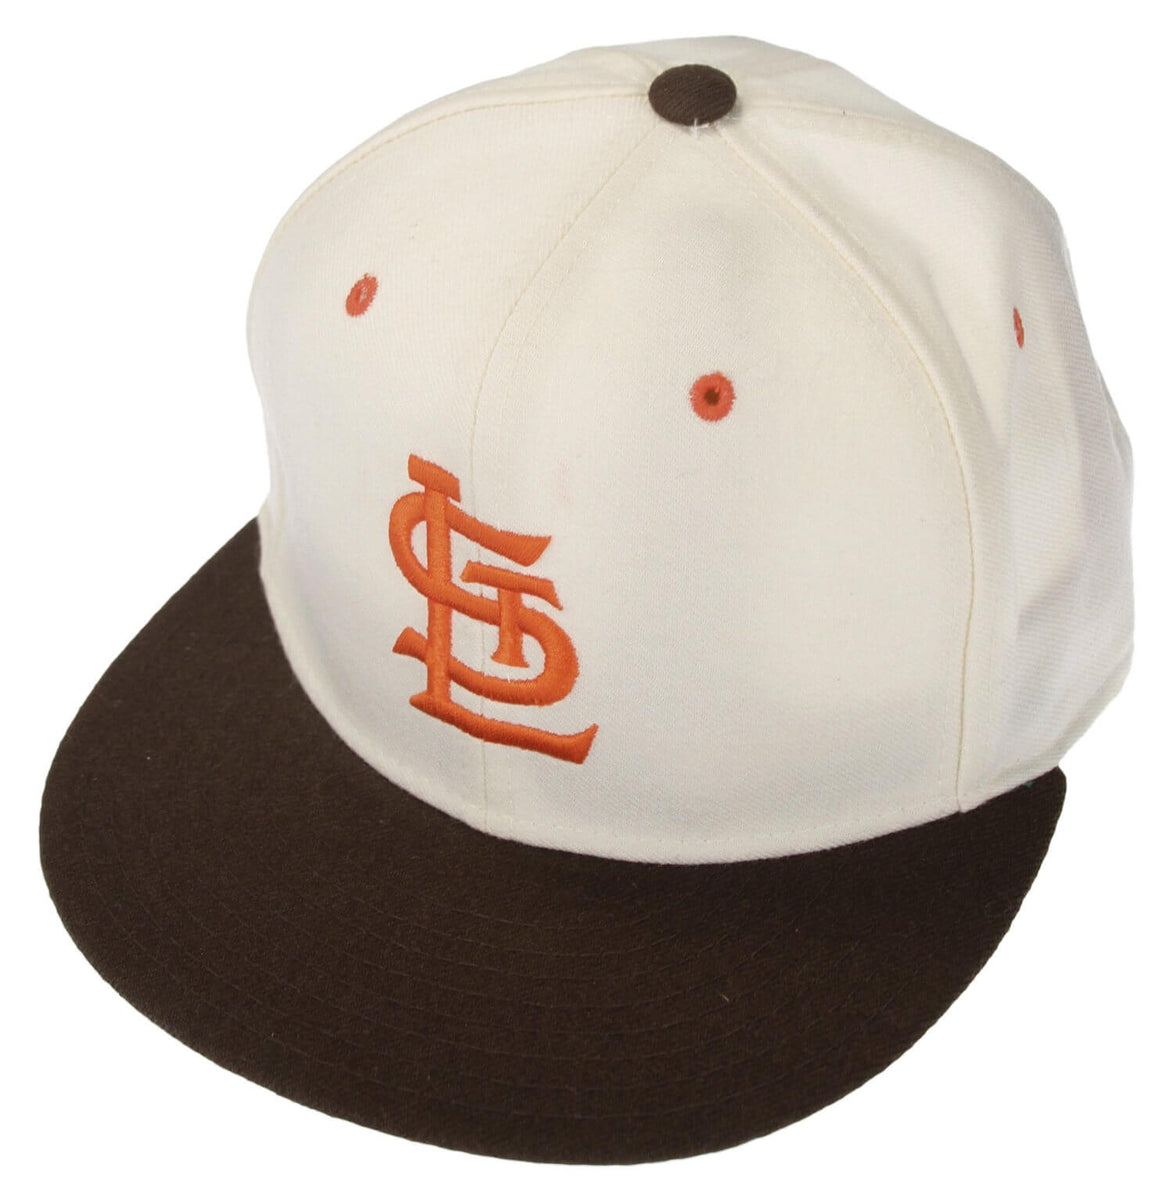 St. Louis Browns Royal Retros MLB Vintage Flex Fitted hat cap Men's size S/M